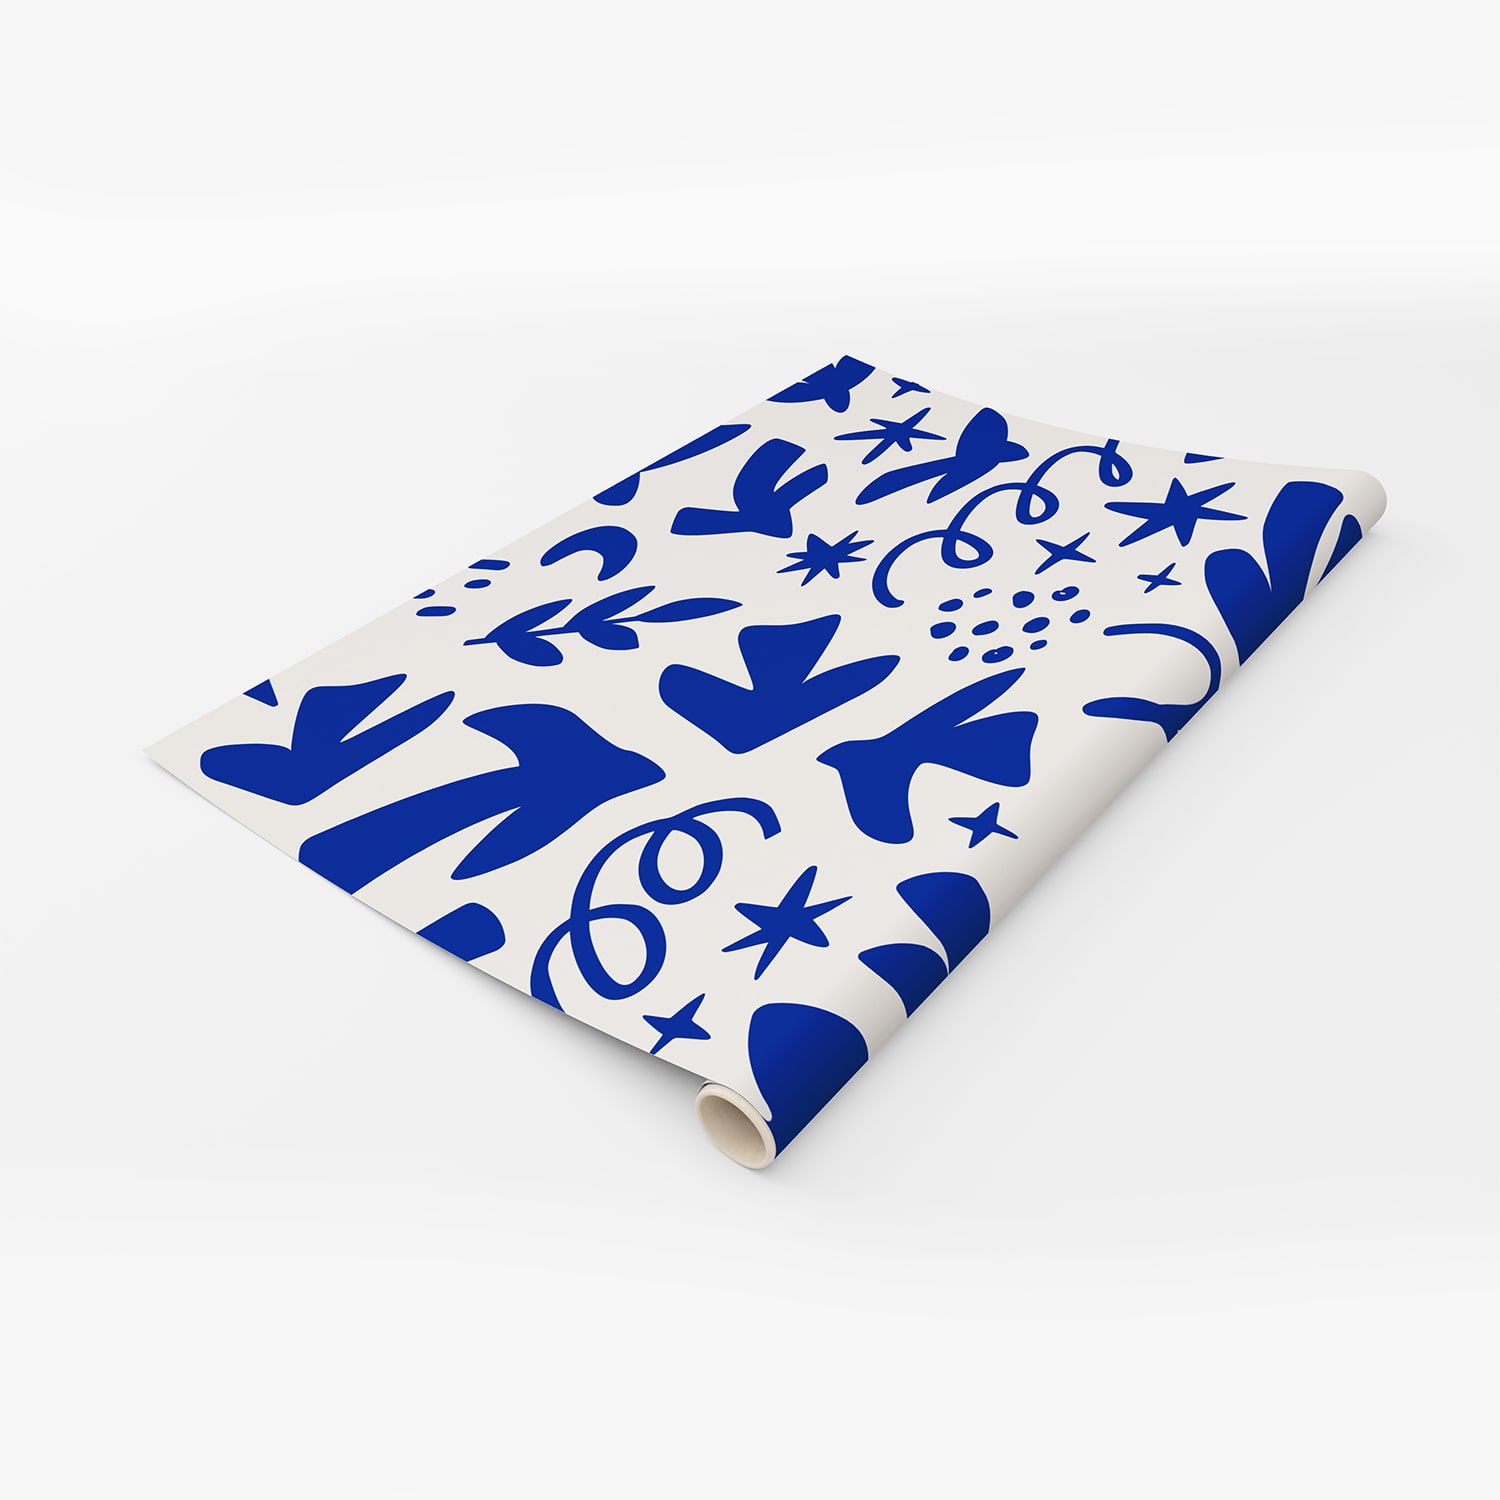 PP100-rouleau-papier-peint-adhesif-decoratif-revetement-vinyle-motifs-inspiré-style-Matisse-motif-organique-renovation-meuble-mur-min